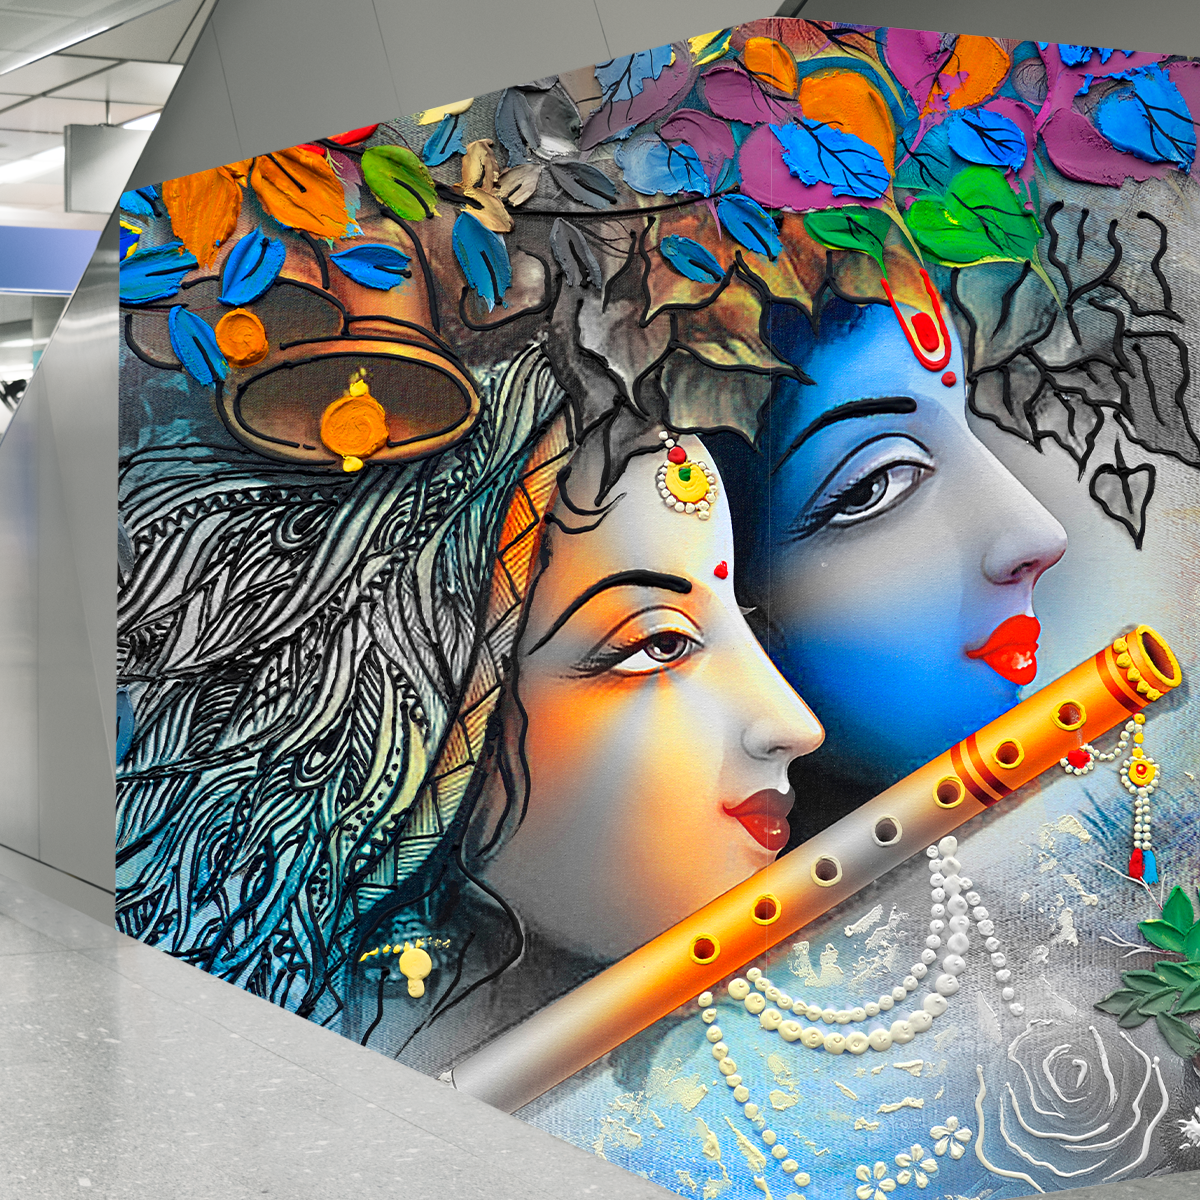 Premium Radha Krishna Wallpaper for Temple Decors | HD Self Adhesive Wallpapers